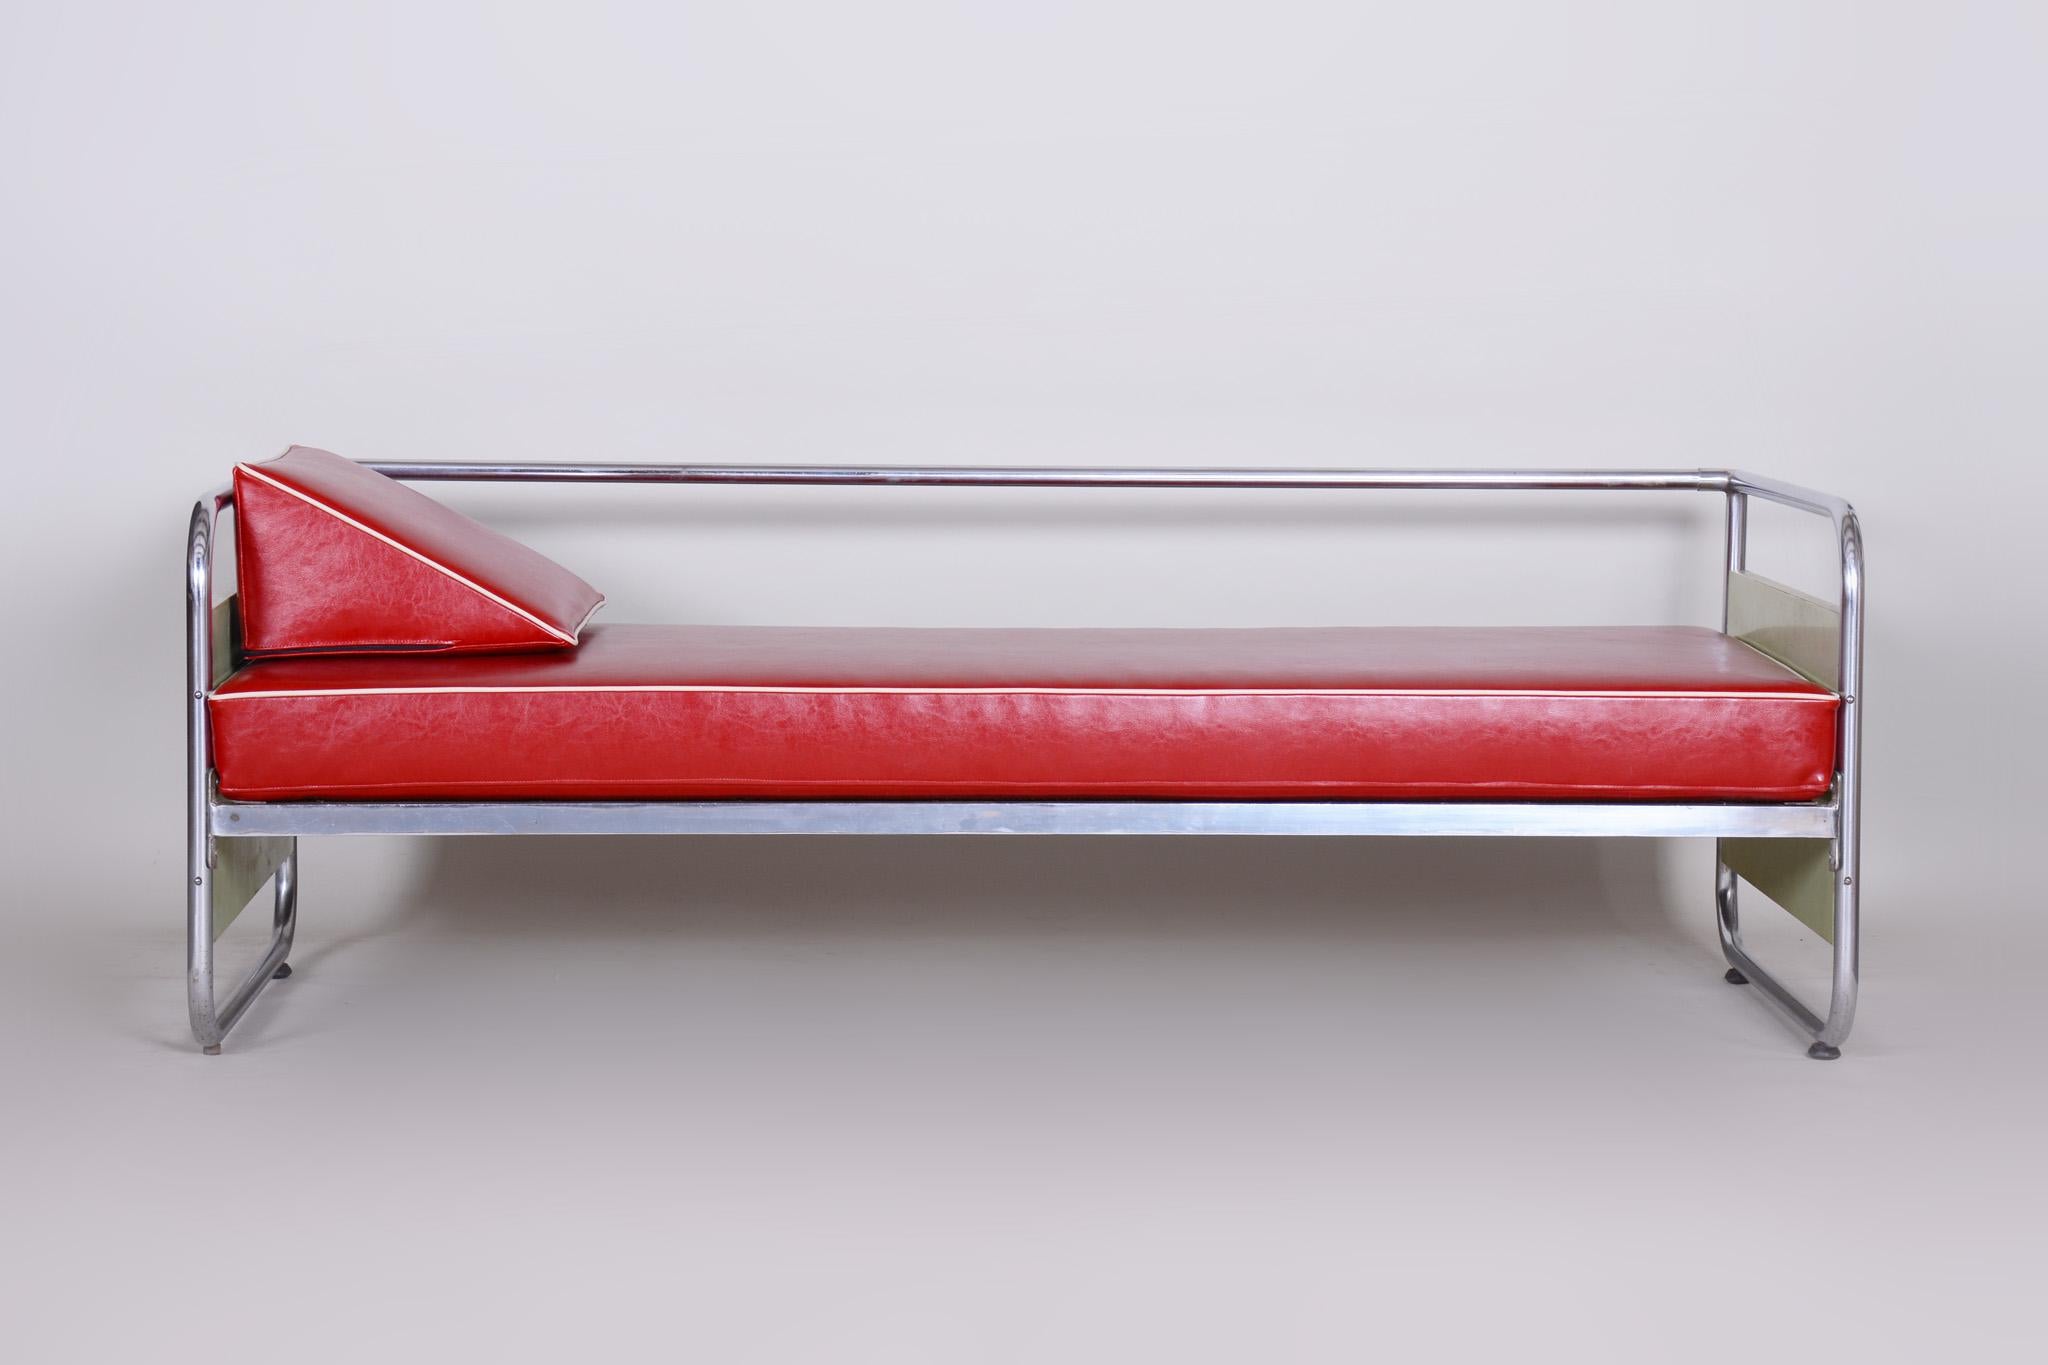 Sofa im Bauhaus-Stil mit verchromtem Stahlrohrgestell.
Hergestellt von Vichr a Spol in den 1930er Jahren.
Das verchromte Stahlrohr ist in perfektem Originalzustand.
Gepolstert mit hochwertigem Leder
Quelle: Tschechische Republik